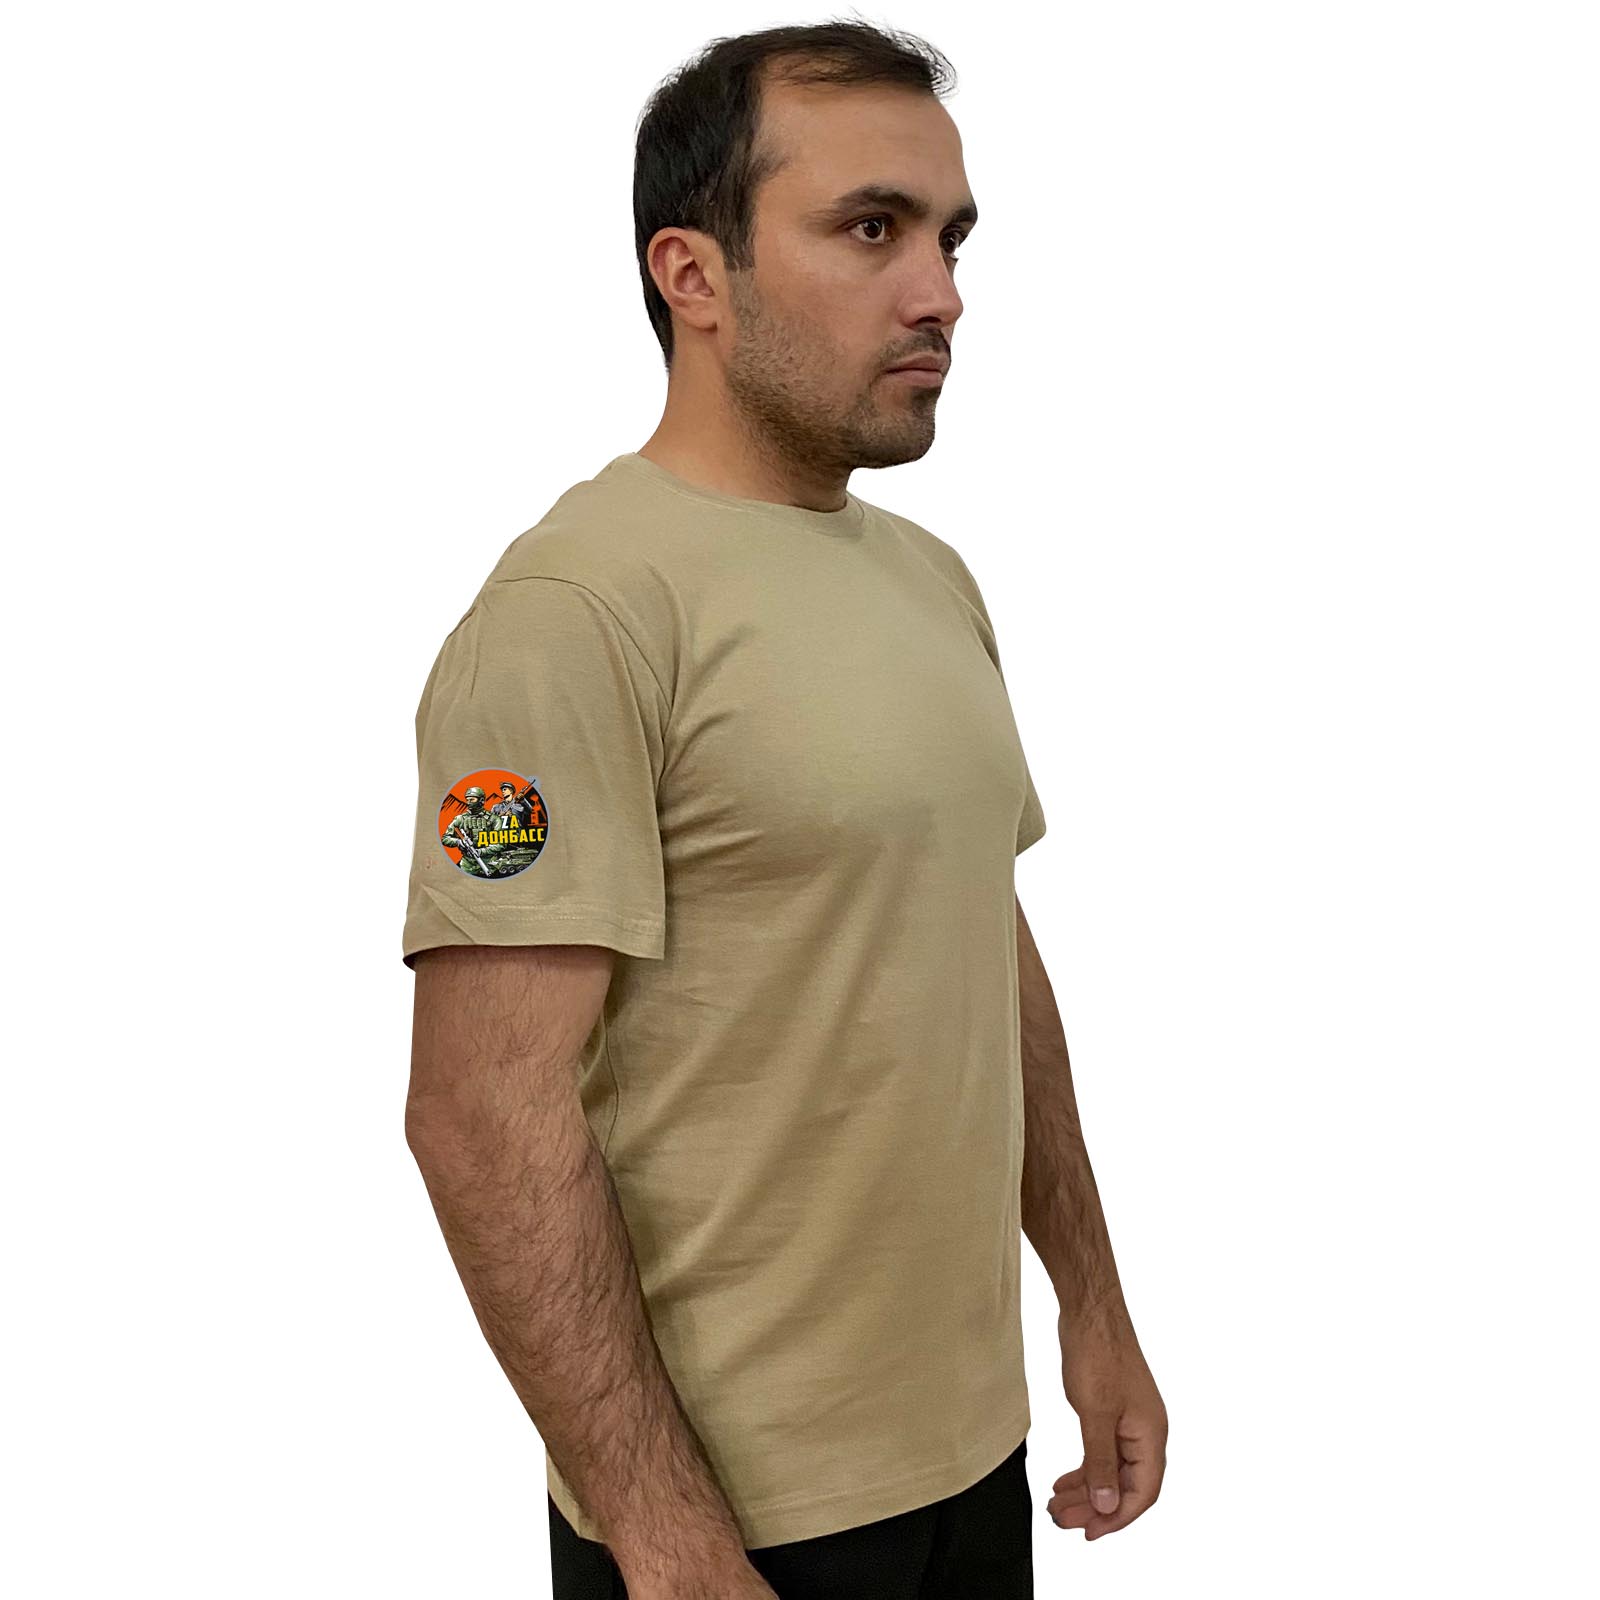 Купить хлопковую песочную футболку Zа Донбасс онлайн